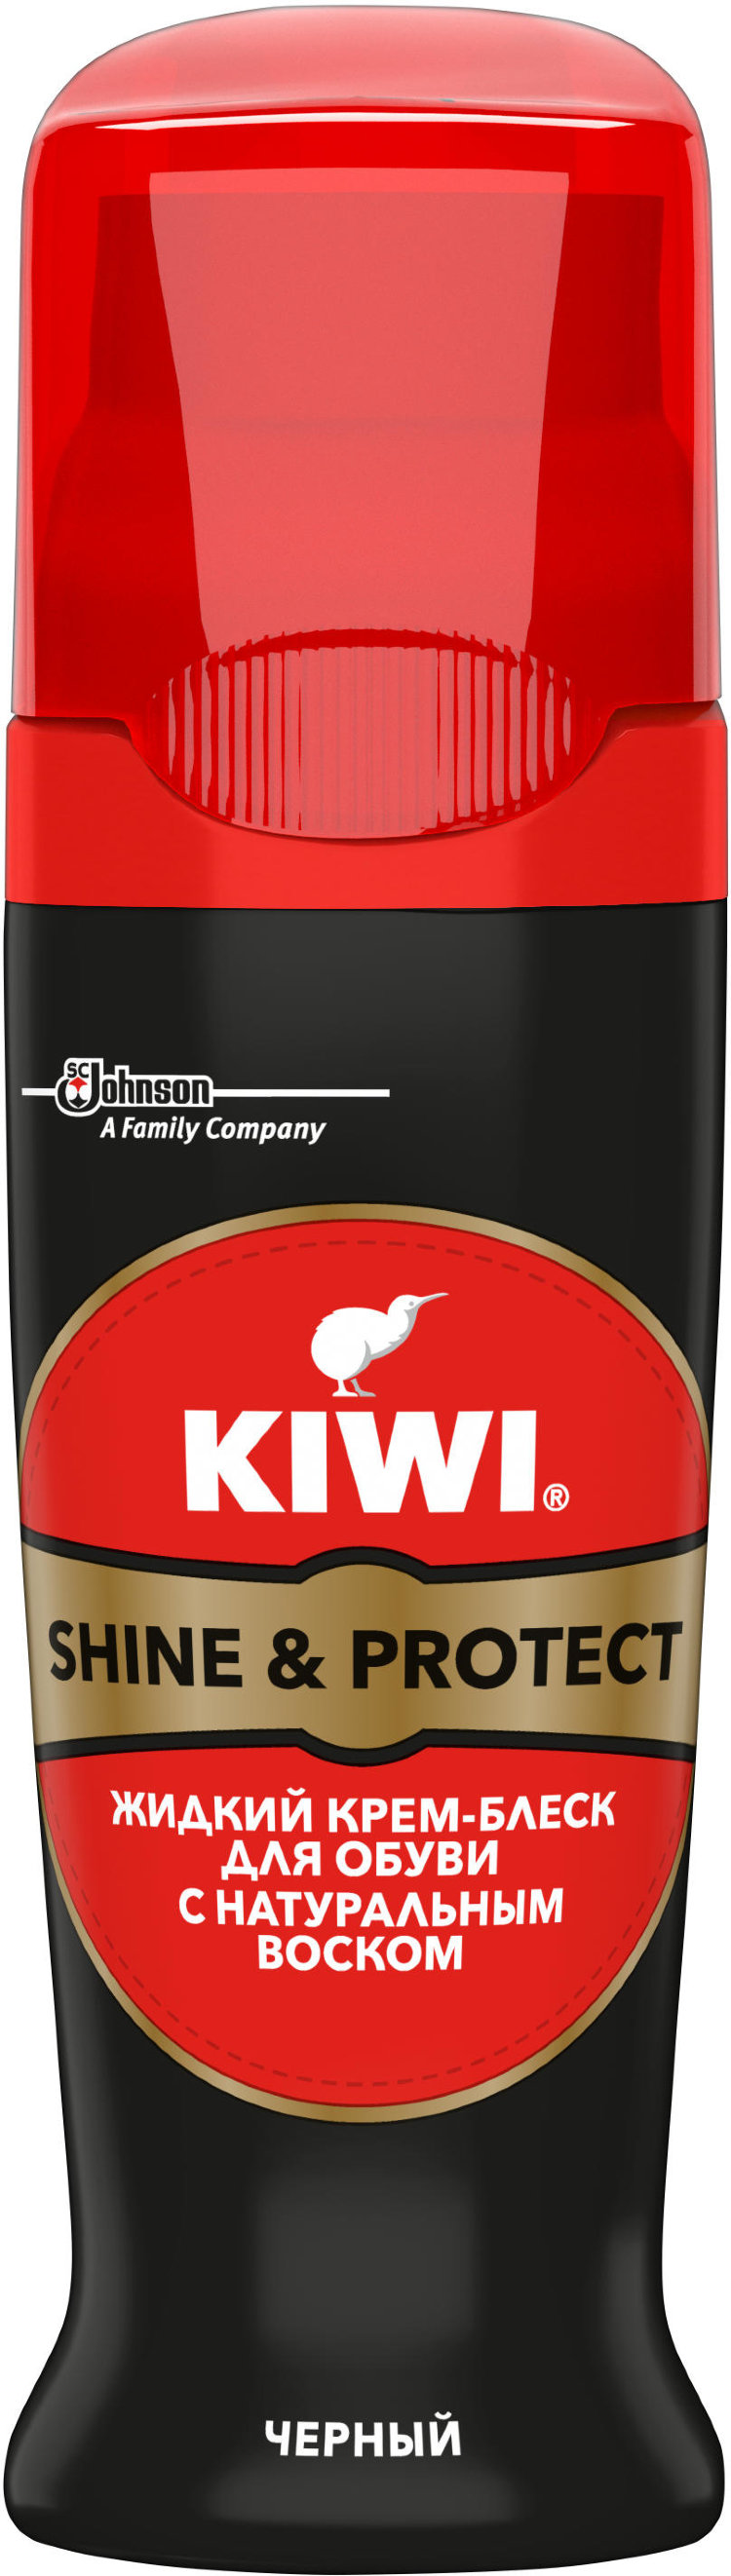 Киви крема купить. Черный крем для обуви Kiwi Shine protect. Жидкий крем-блеск для обуви Shine & protect. Крем блеск для обуви киви. Крем для обуви Kiwi Shoe Polish (черный) 50мл.